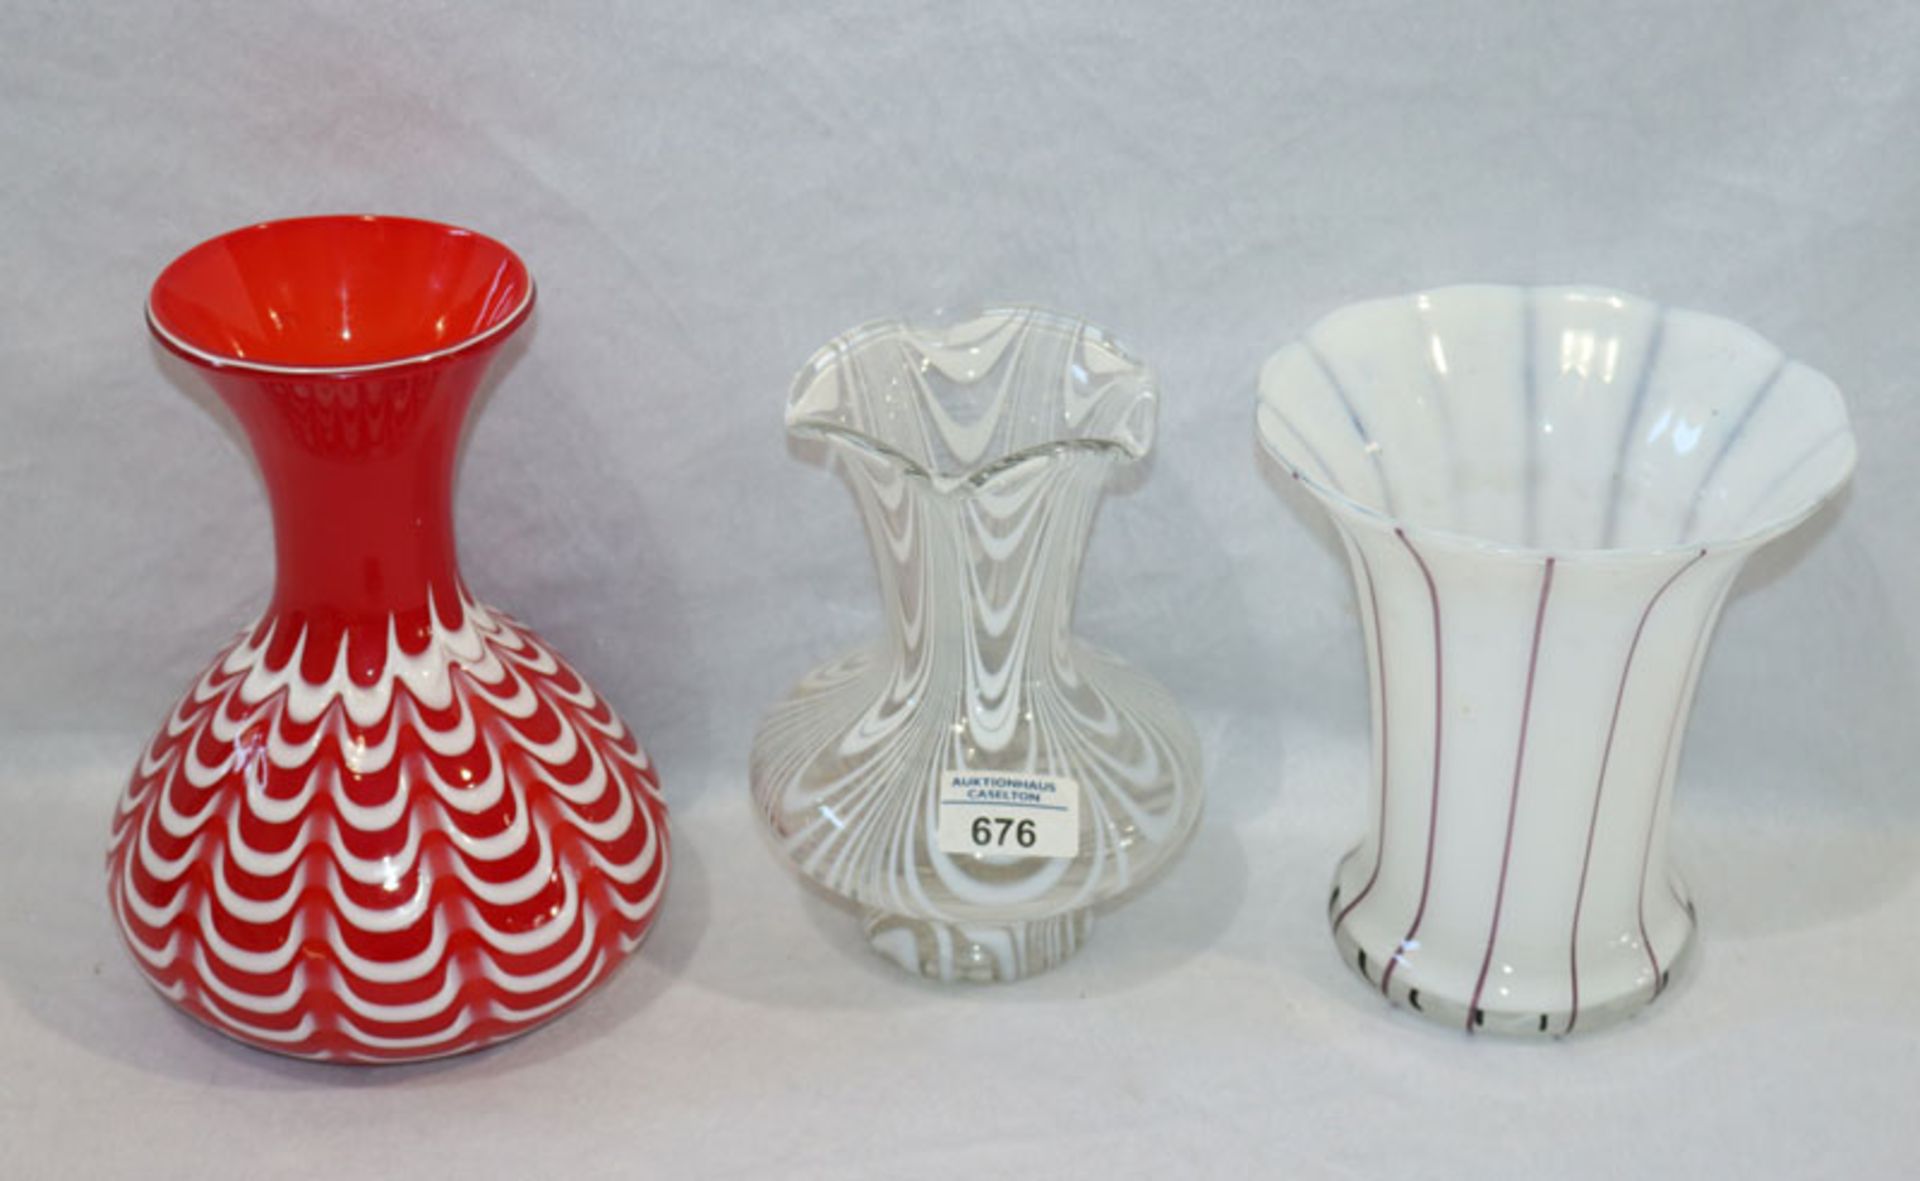 3 Glas Vasen, Böhmen/Tschechien, rote Vase mit weißen Einschmelzungen, H 21 cm, D 16 cm, kleiner